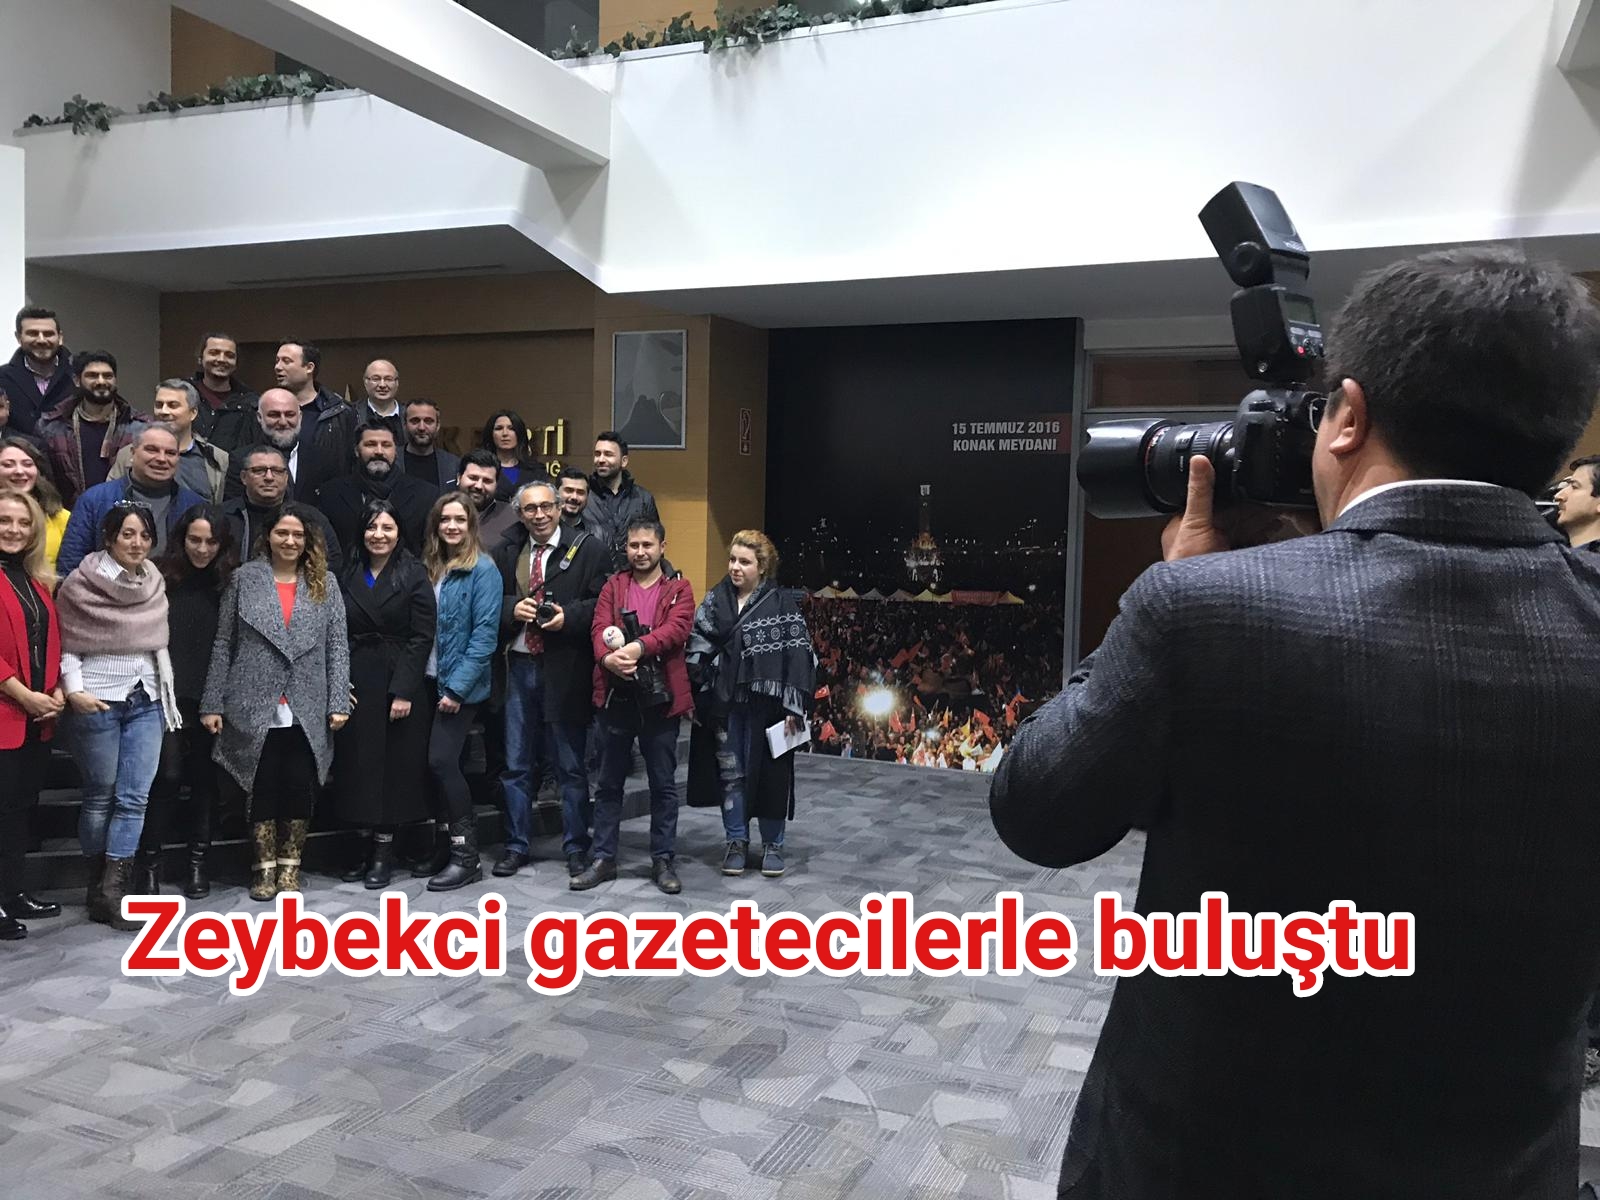 Zeybekci gazetecilerle buluştu